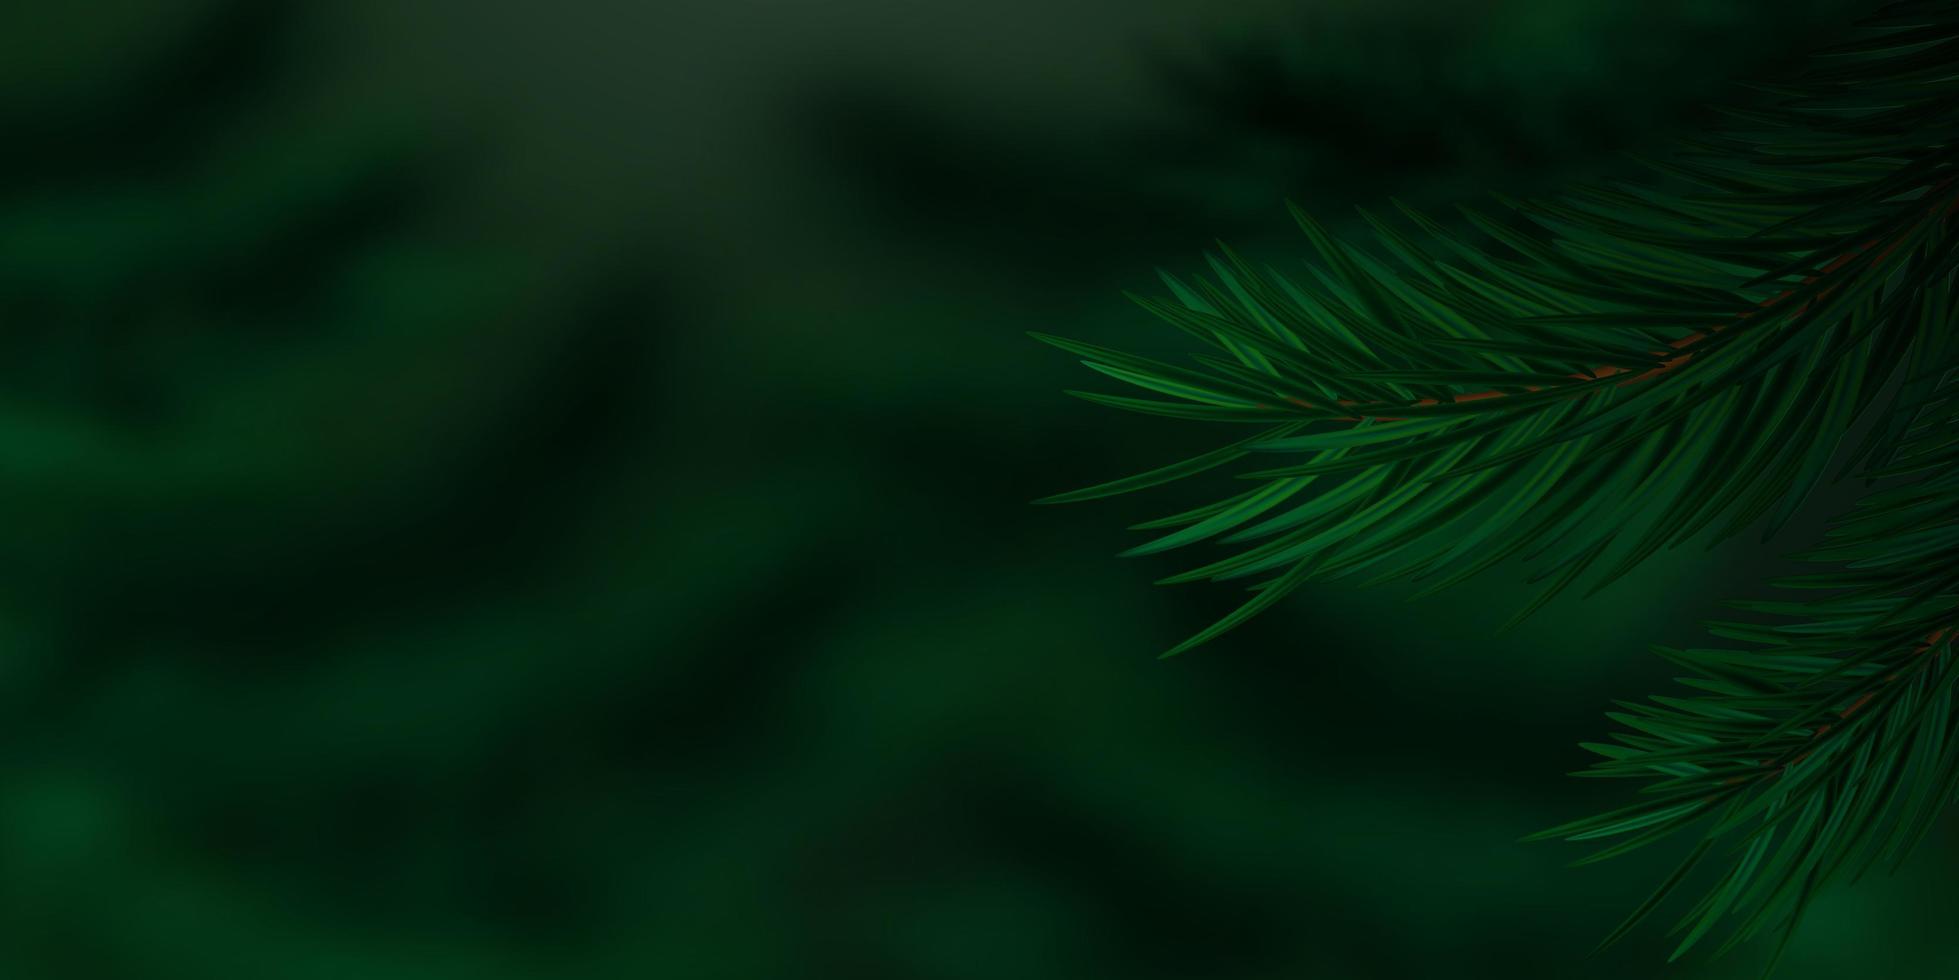 primo piano di ramoscelli di conifere. sfondo scuro della natura. rami realistici di pino o abete rosso su sfondo sfocato. vegetazione lussureggiante in un bosco di conifere. copia spazio. illustrazione vettoriale. vettore